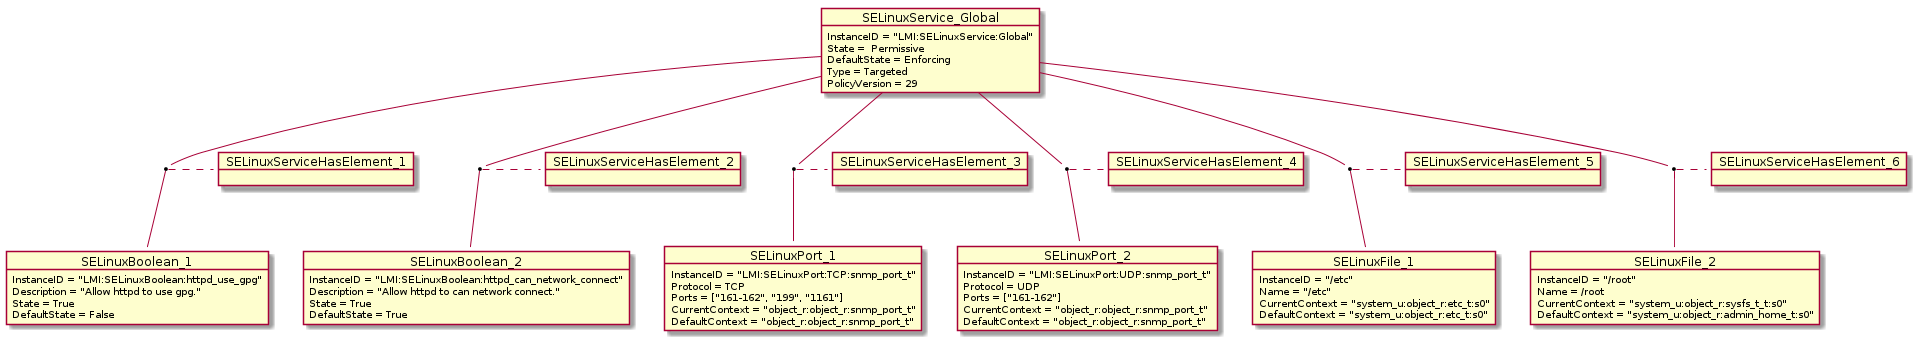 selinux-instances.png